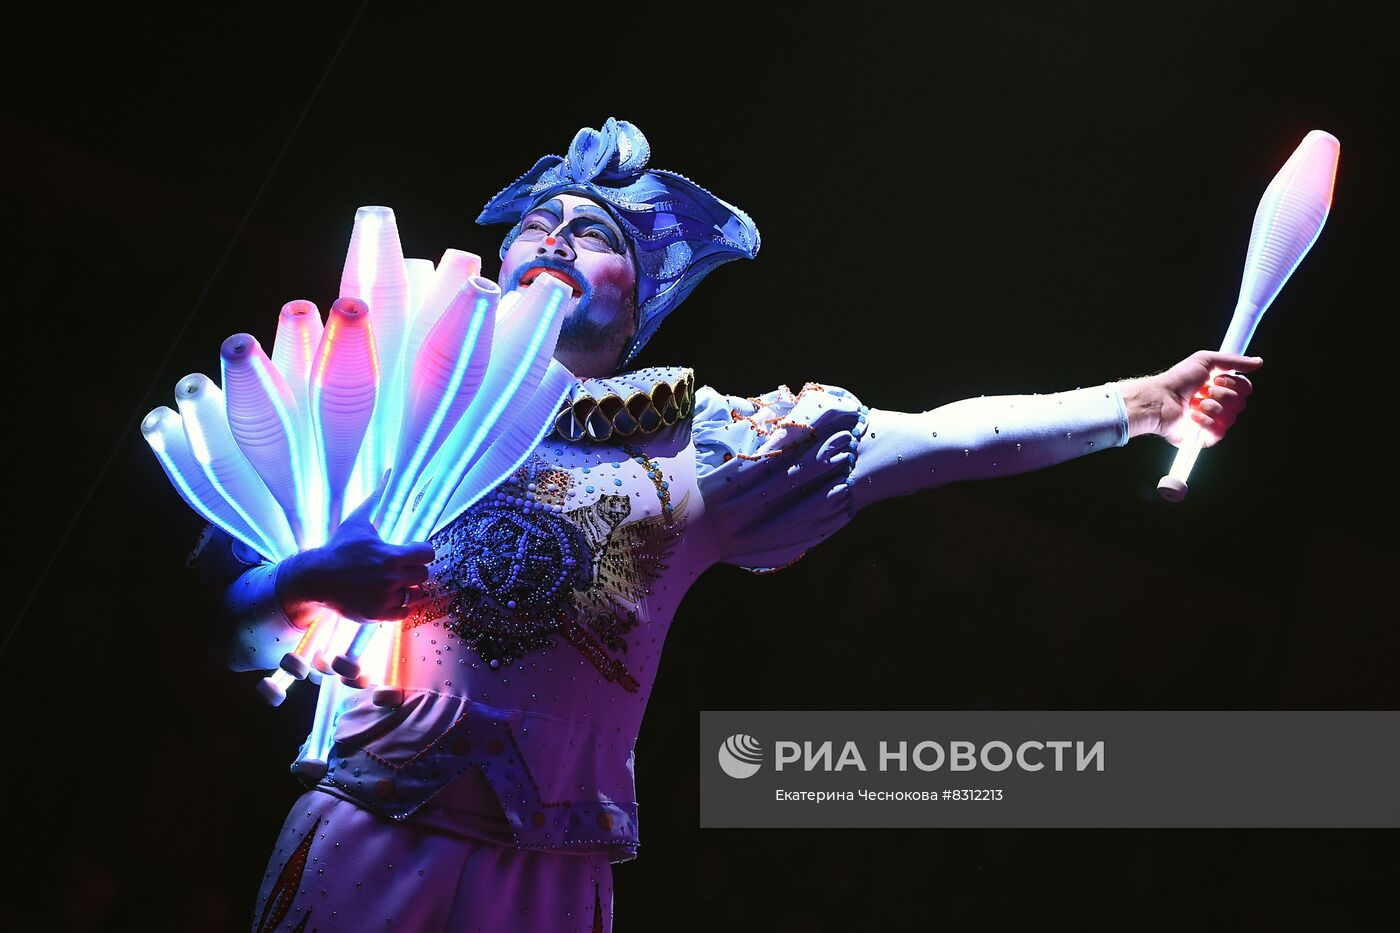 Первый Международный фестиваль циркового искусства "Без границ"